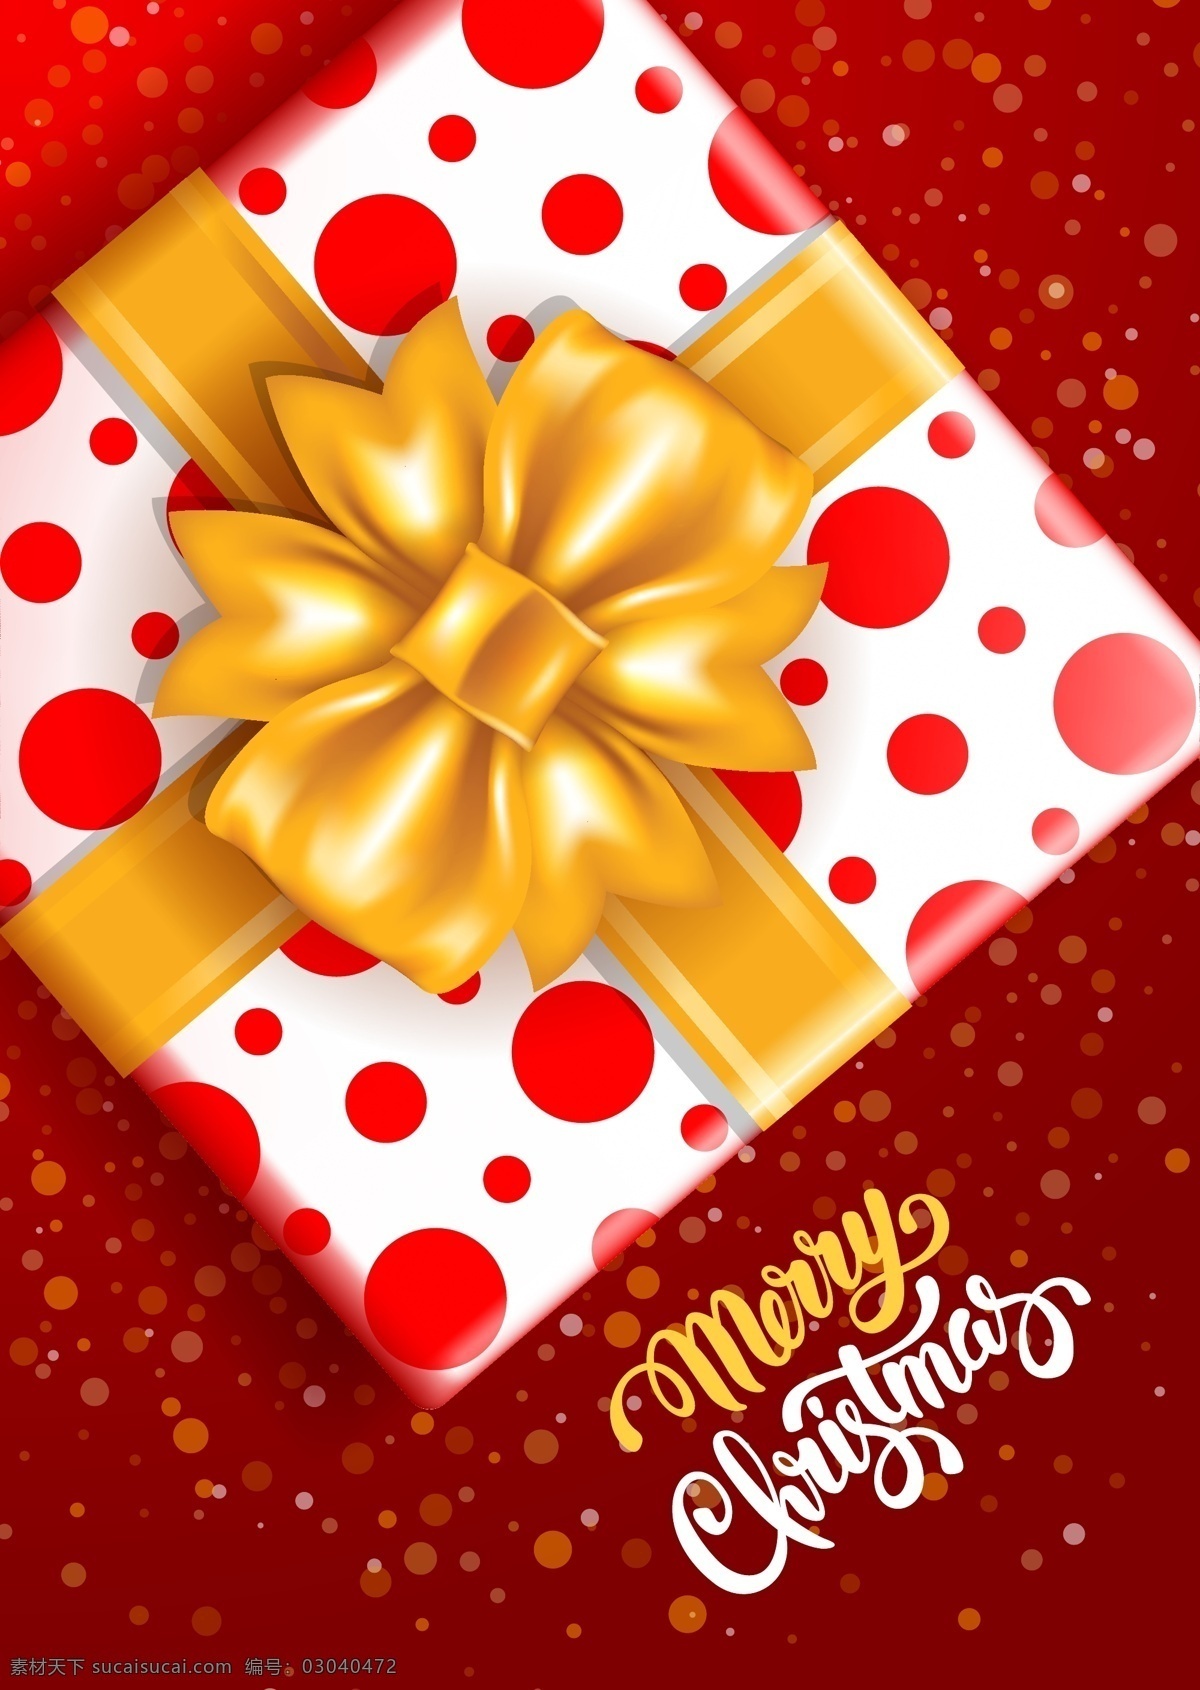 圣诞 礼物 盒 矢量 矢量素材 矢量图 设计素材 创意设计 节日素材 圣诞节 高清图片